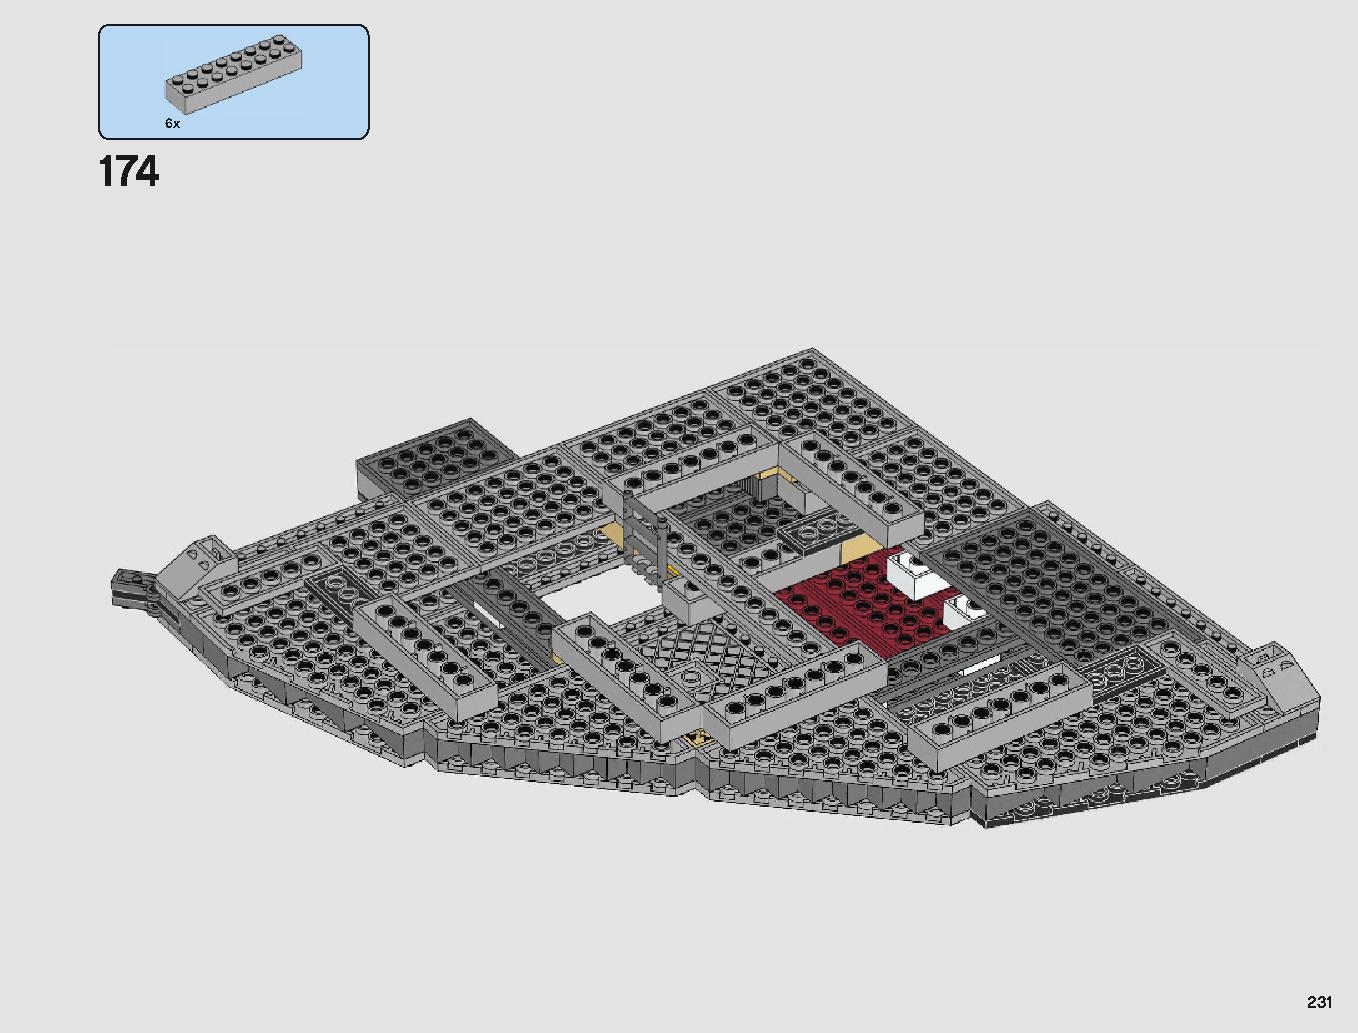 クラウド・シティ 75222 レゴの商品情報 レゴの説明書・組立方法 231 page